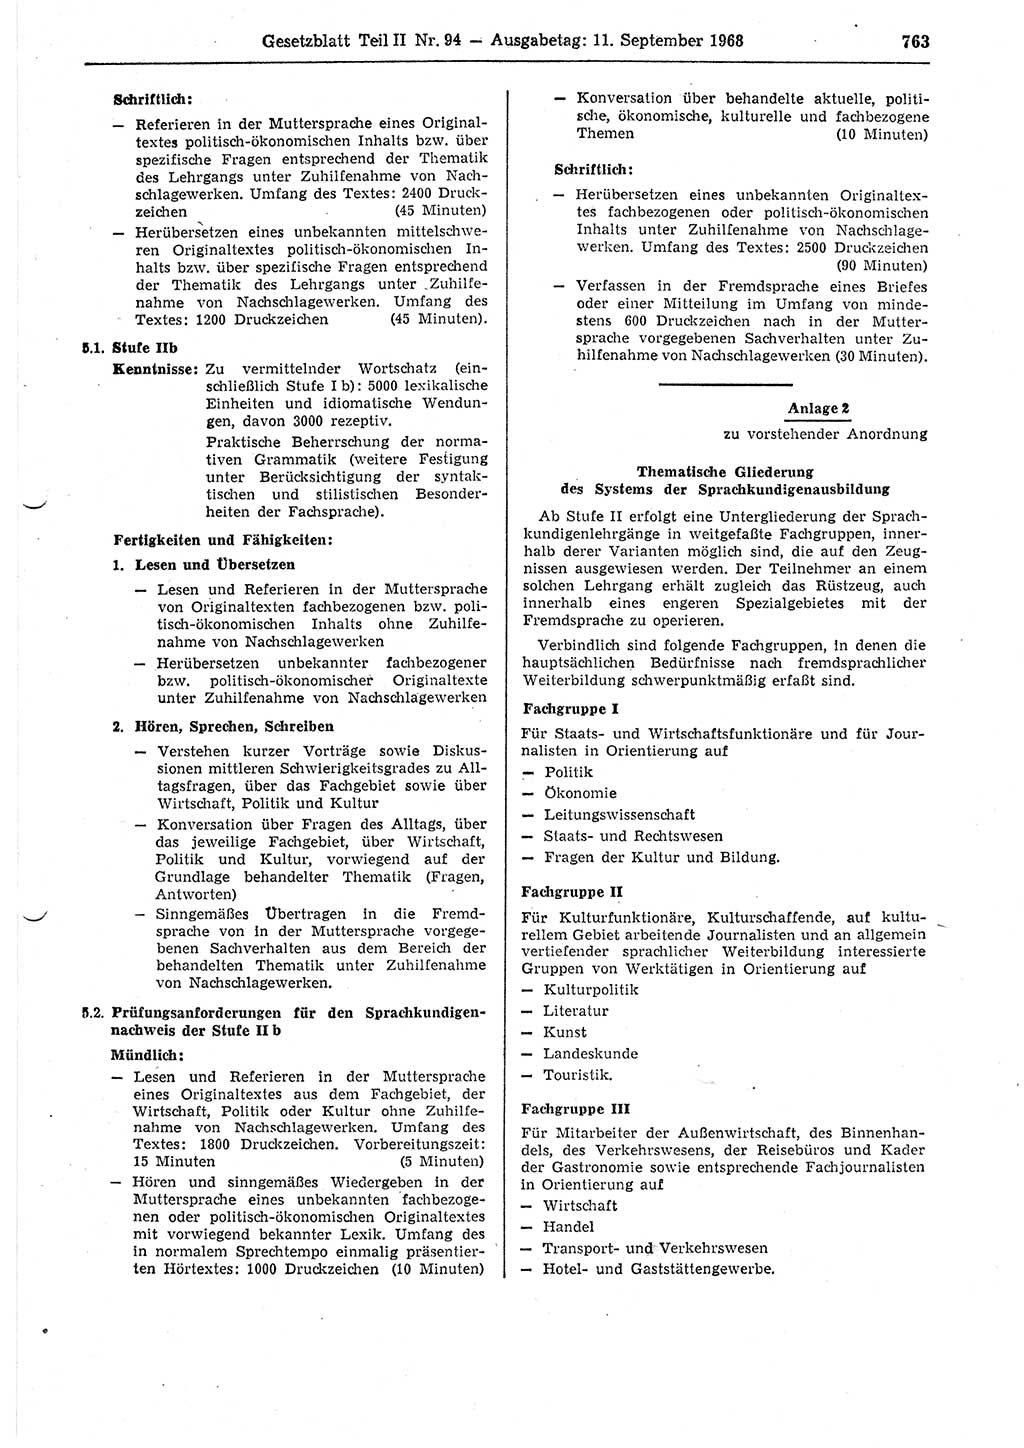 Gesetzblatt (GBl.) der Deutschen Demokratischen Republik (DDR) Teil ⅠⅠ 1968, Seite 763 (GBl. DDR ⅠⅠ 1968, S. 763)